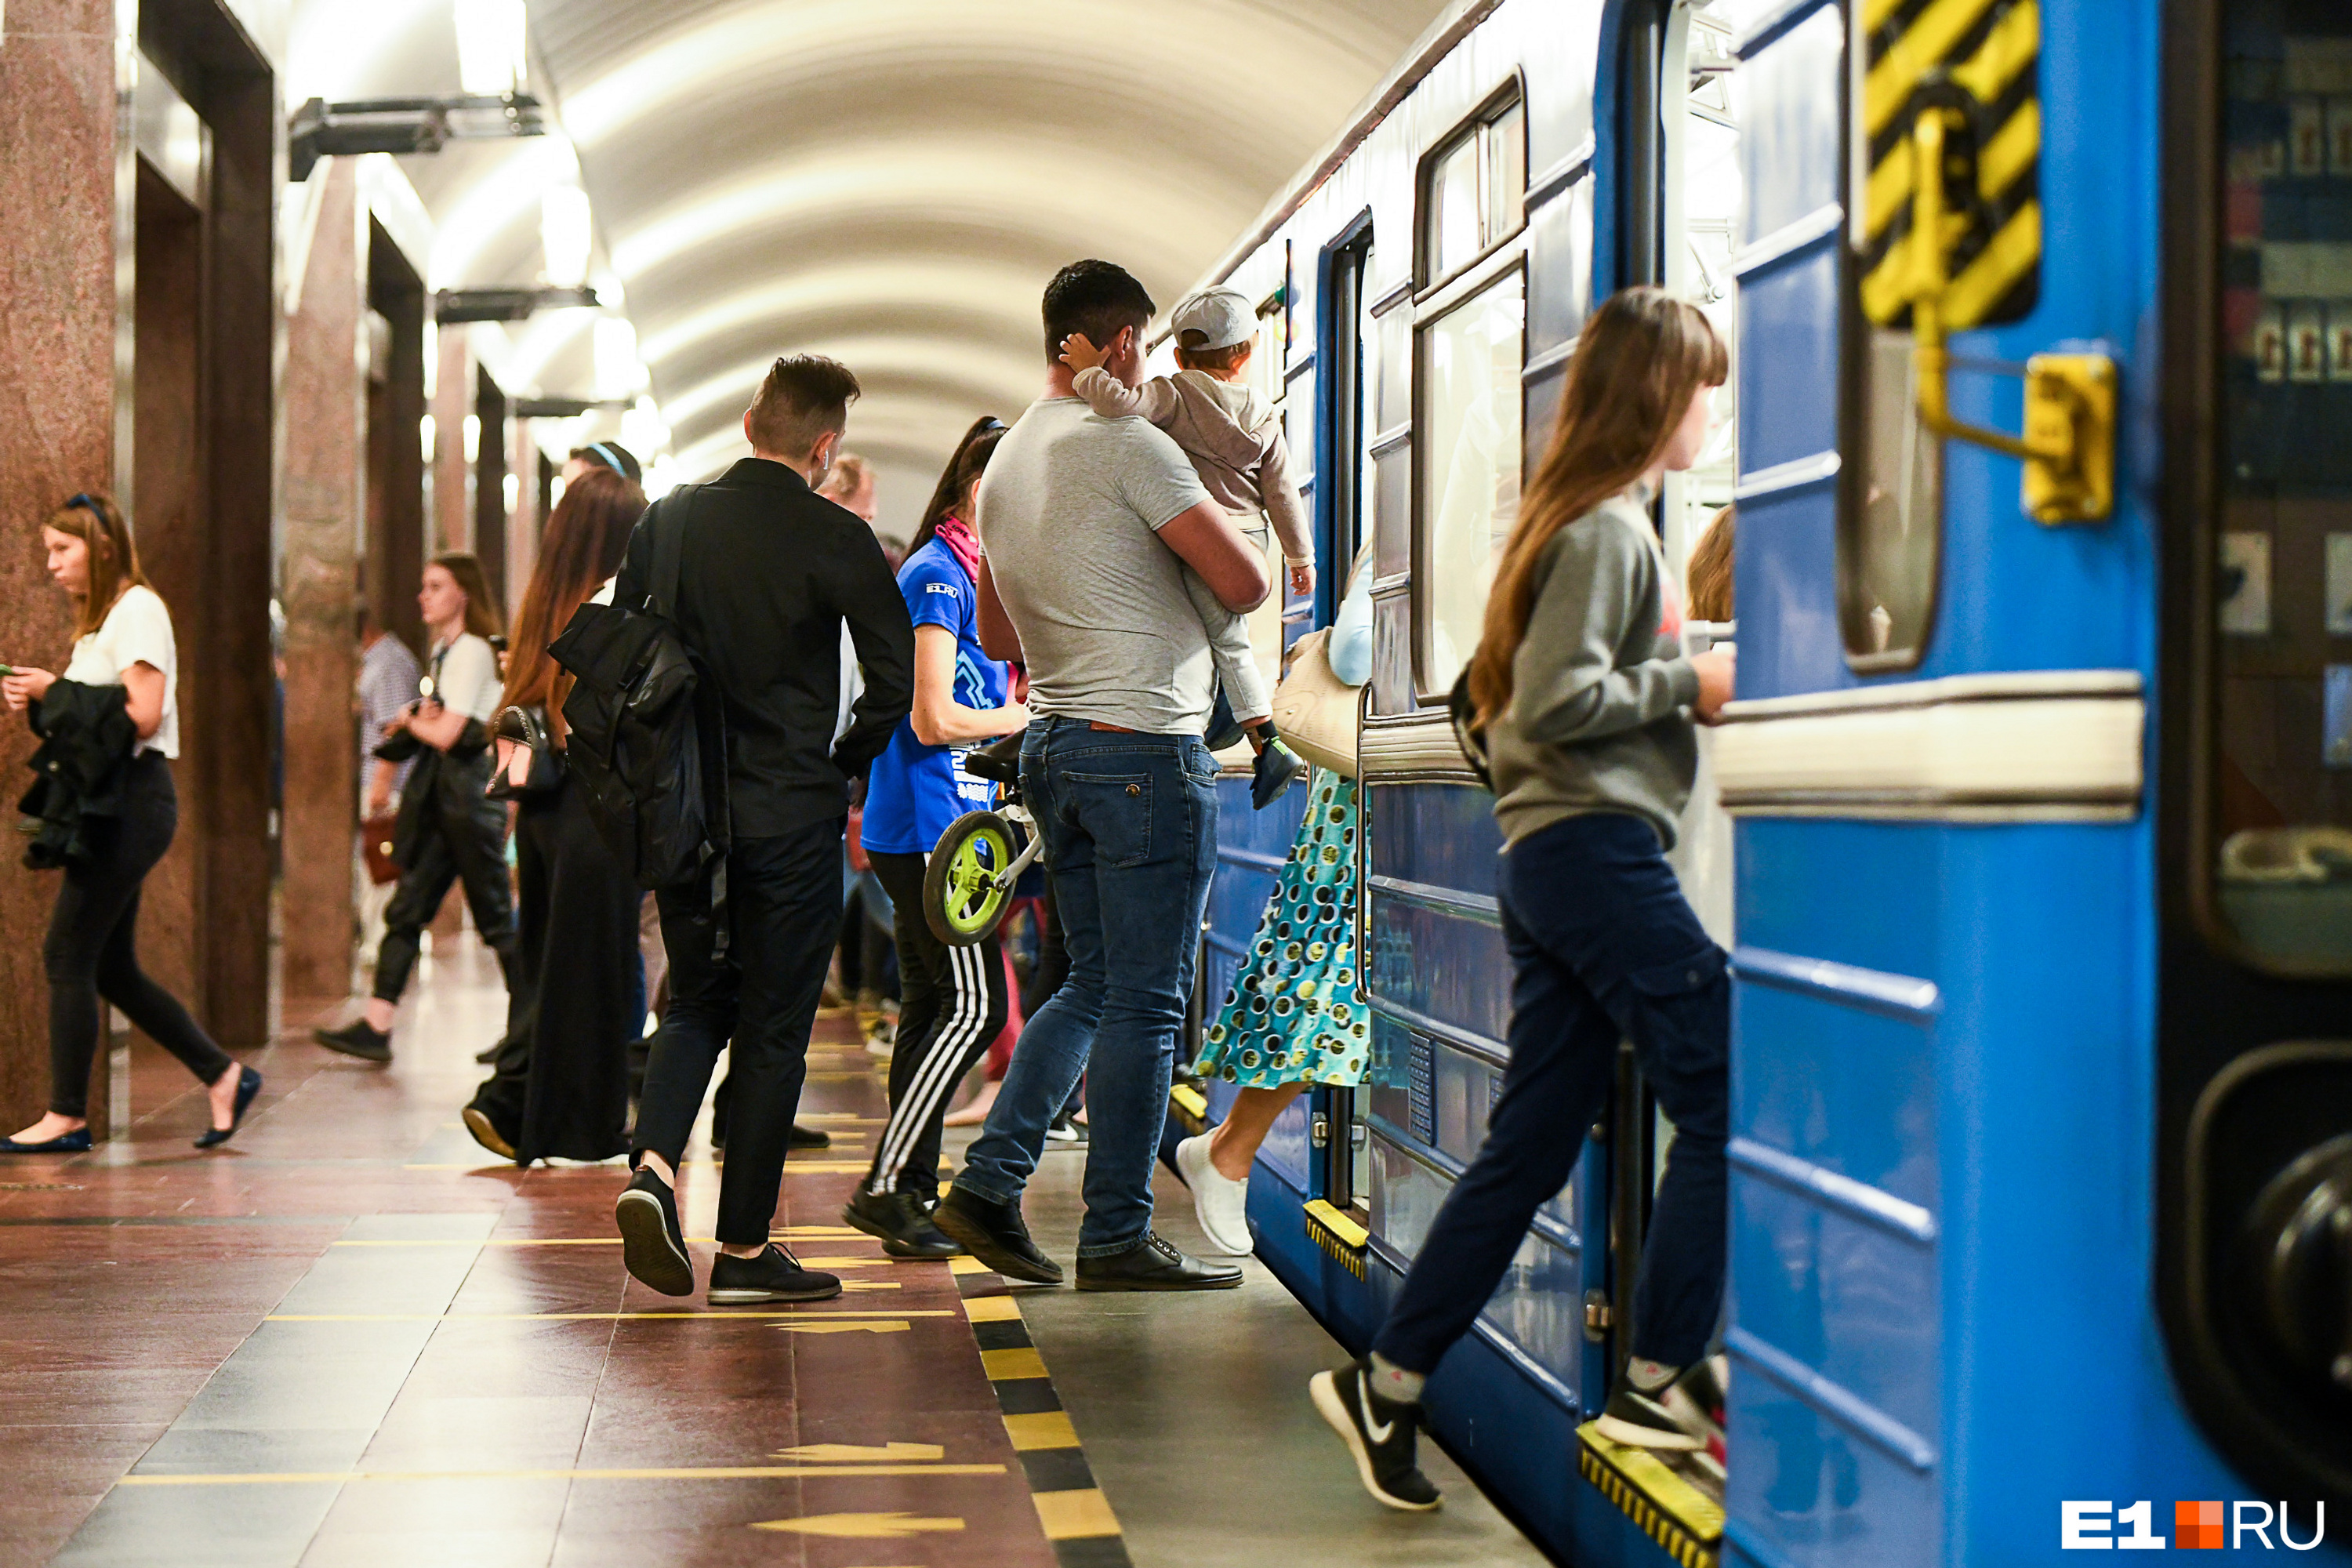 Екатеринбург ждет две ветки метро. Где появятся станции?